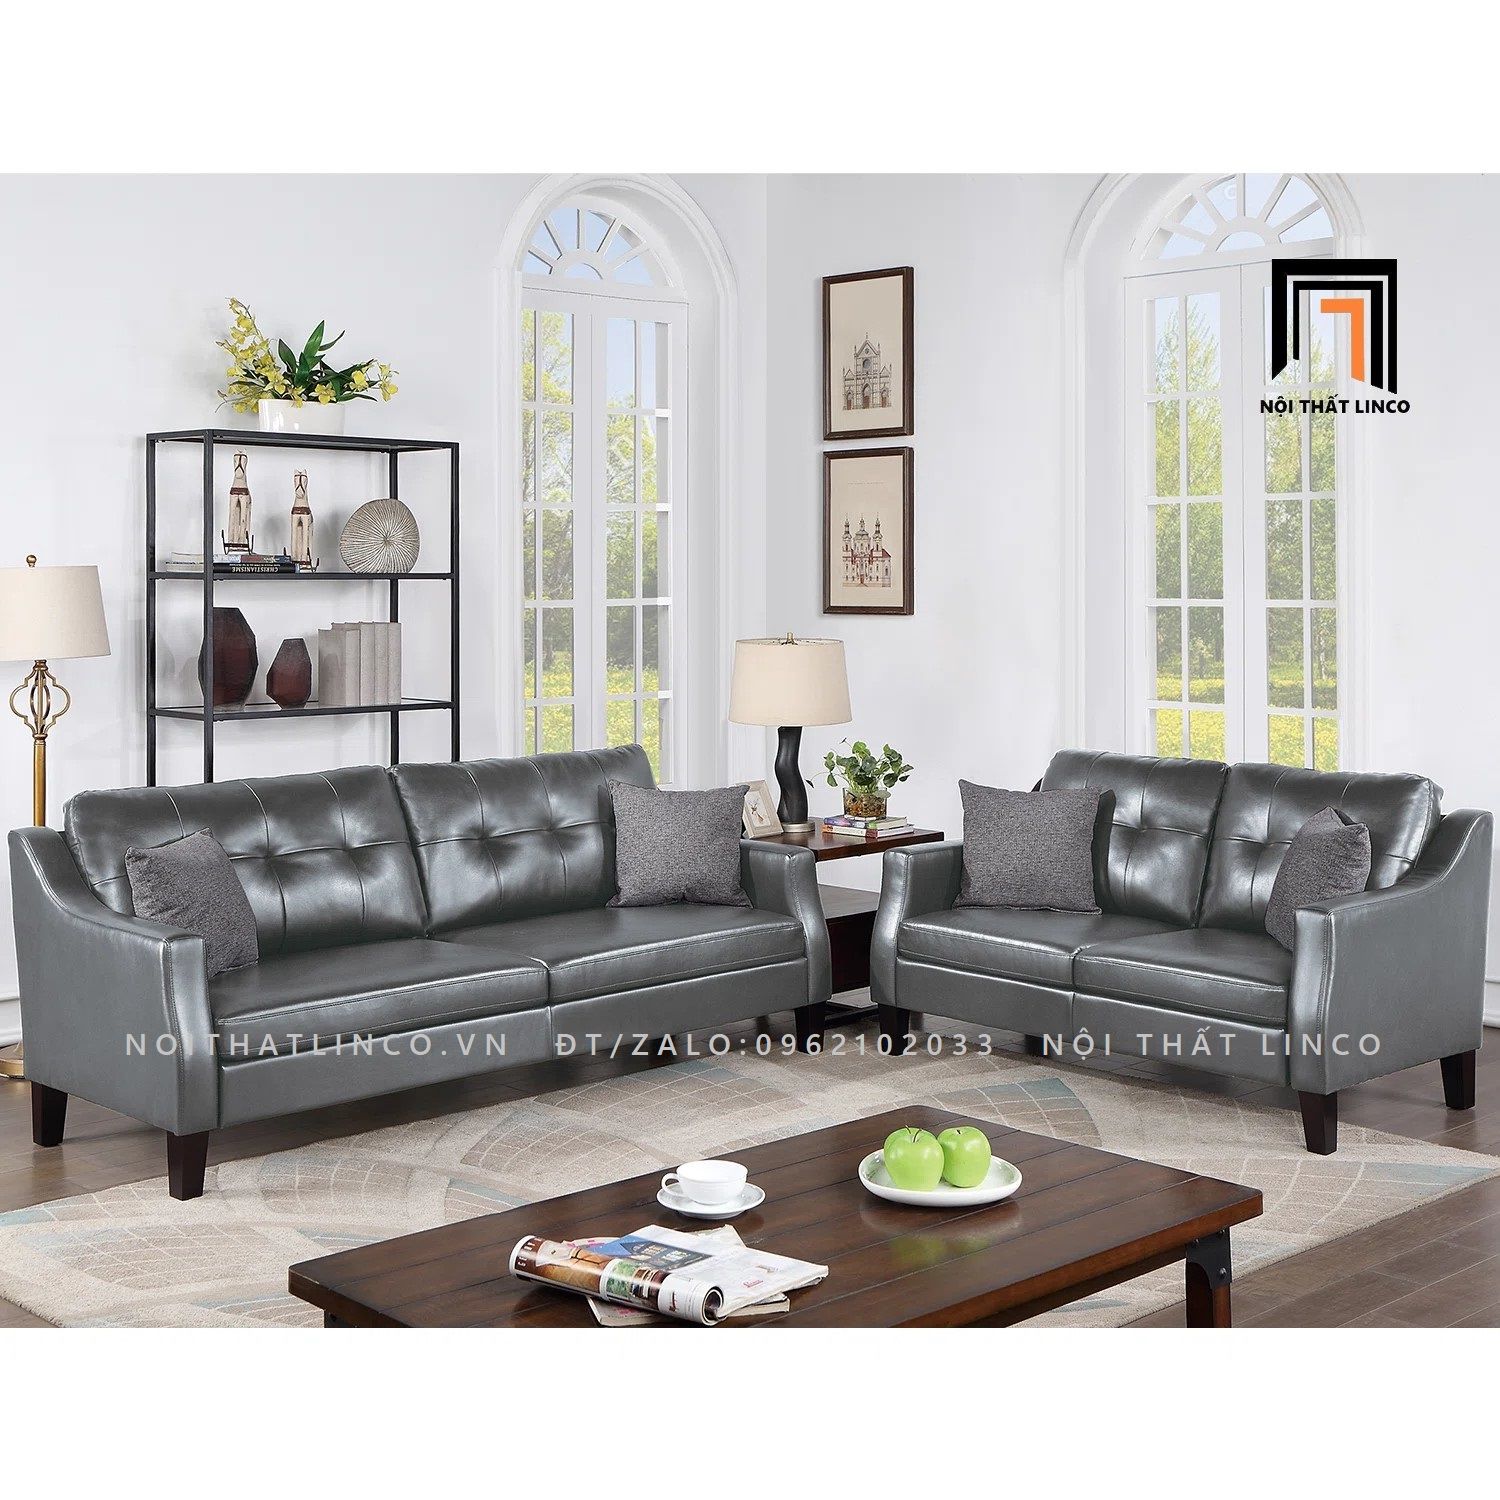  Bộ ghế sofa da công nghiệp KT39 Winir cho phòng khách gia đình 